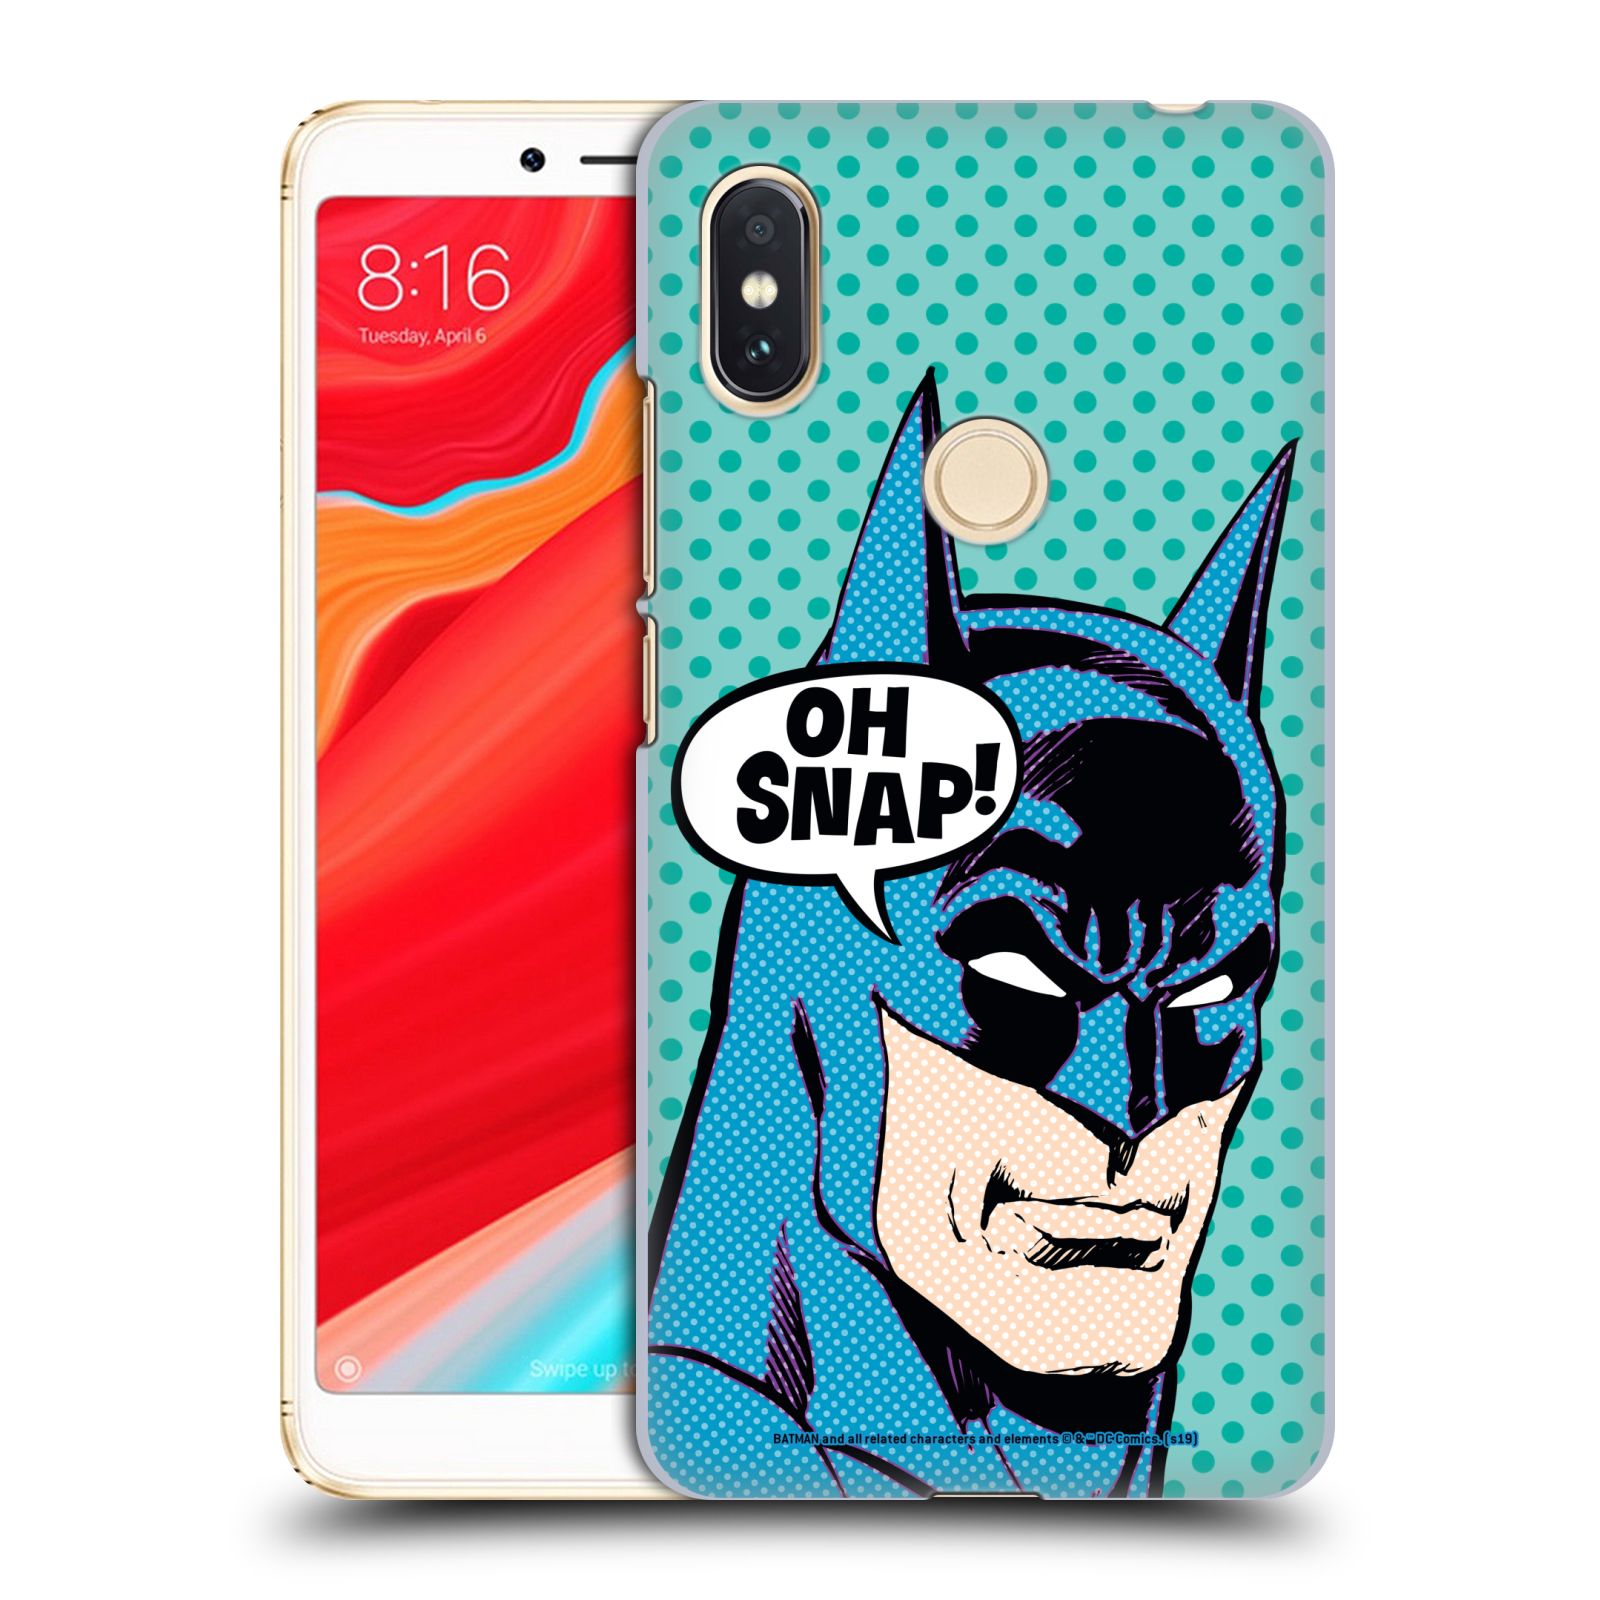 Pouzdro na mobil Xiaomi Redmi S2 - HEAD CASE - DC komix Batman Pop Art tvář